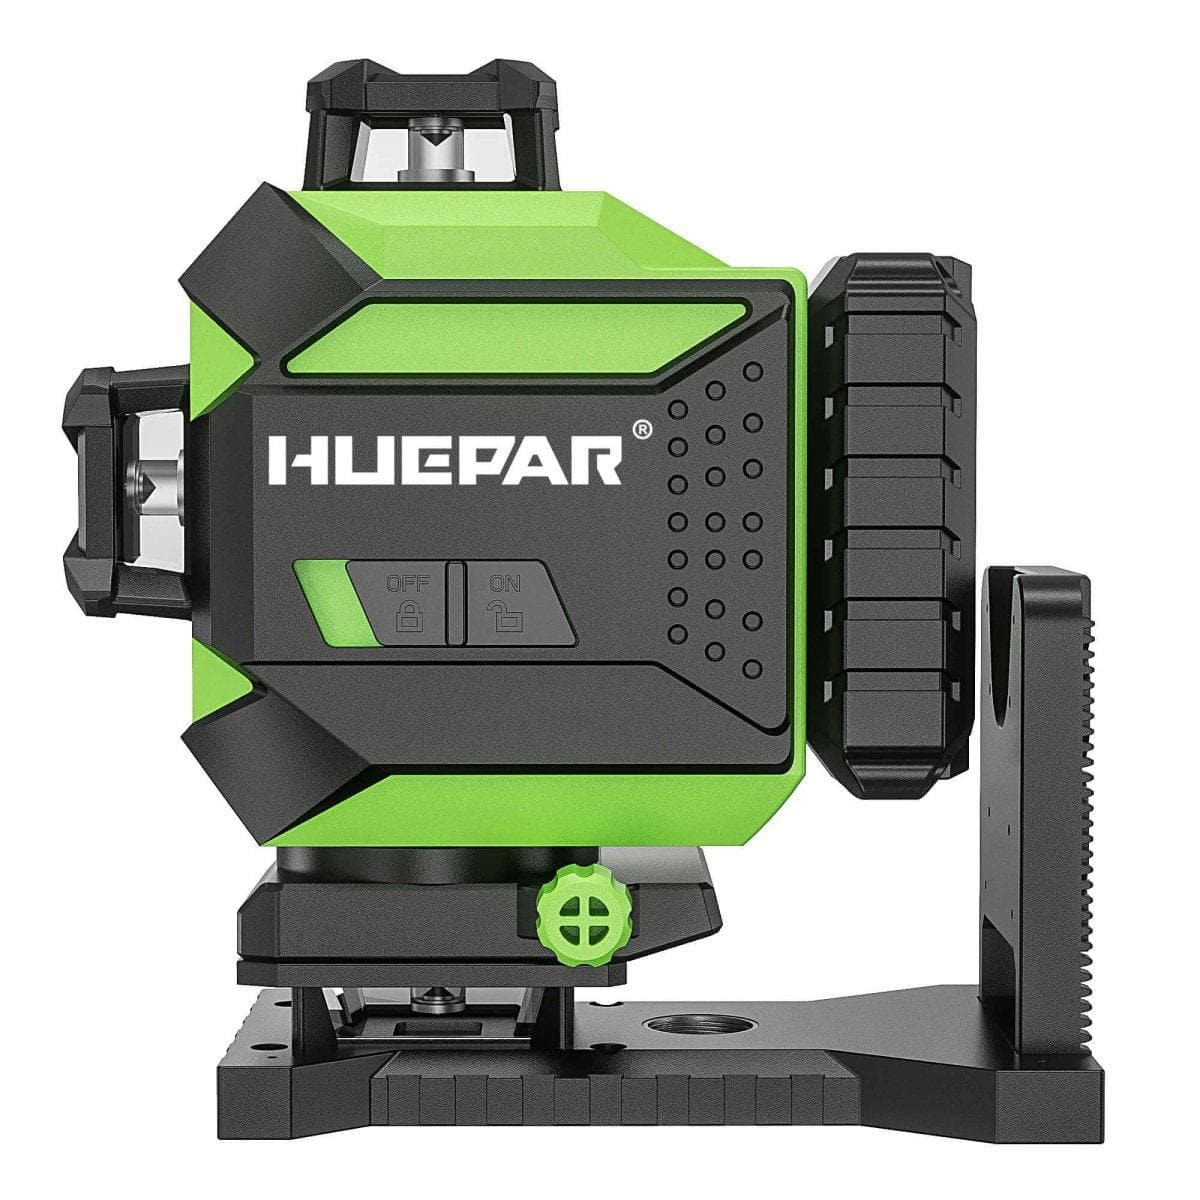 Huepar Laser Level Self-leveling 4x360 with Remote Control 16 Lines Gr